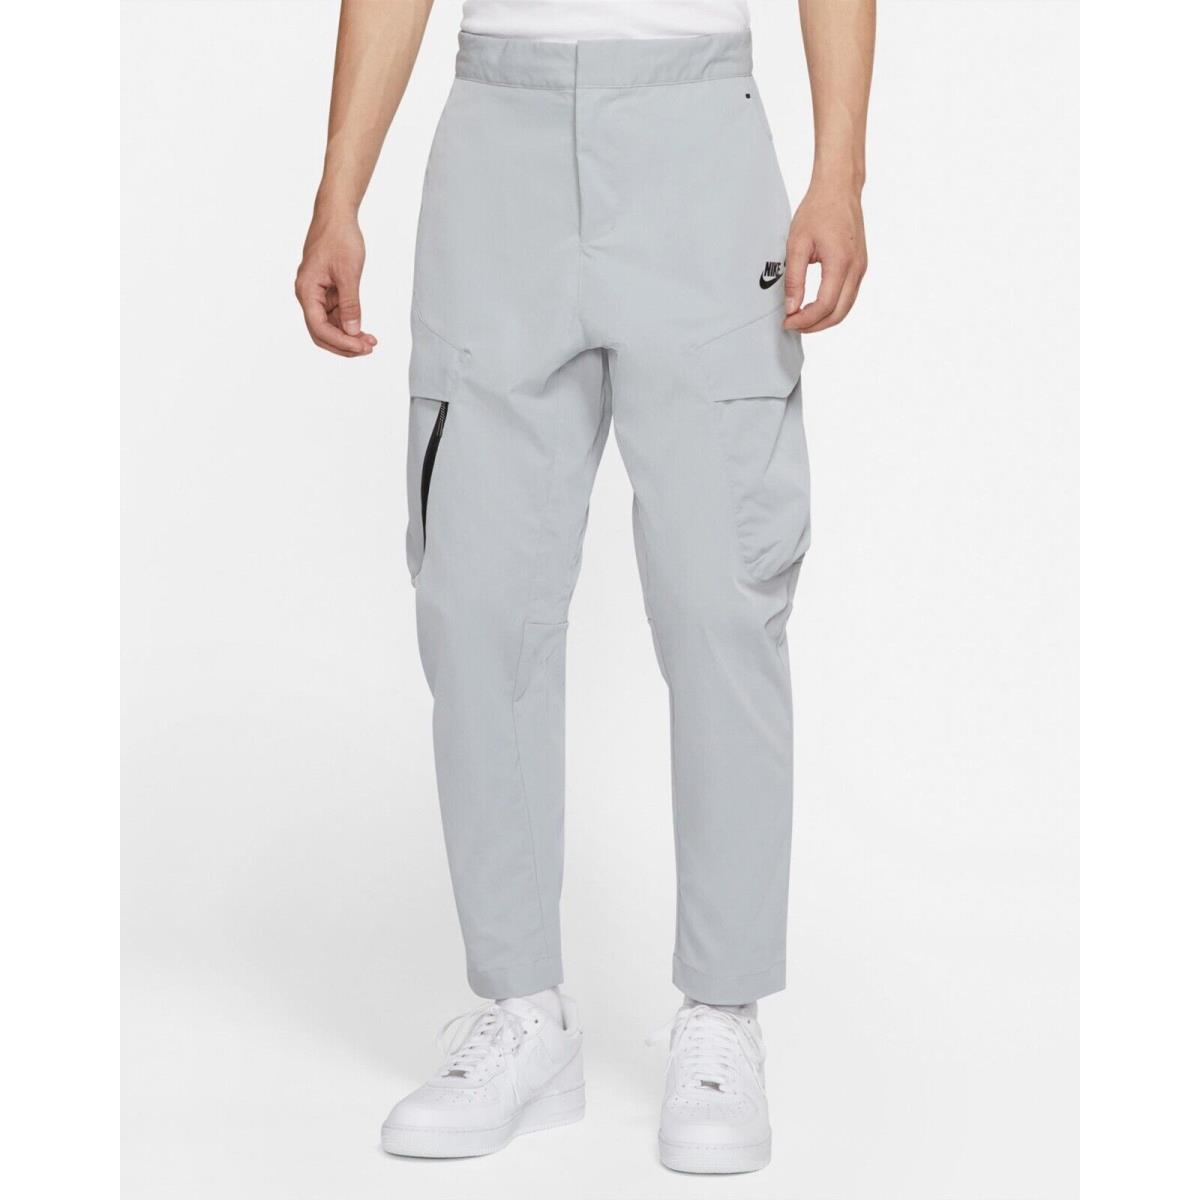 Nike Sportswear Tech Pack Woven Utility Pants Men s SZ 28 Grey DH3866-077